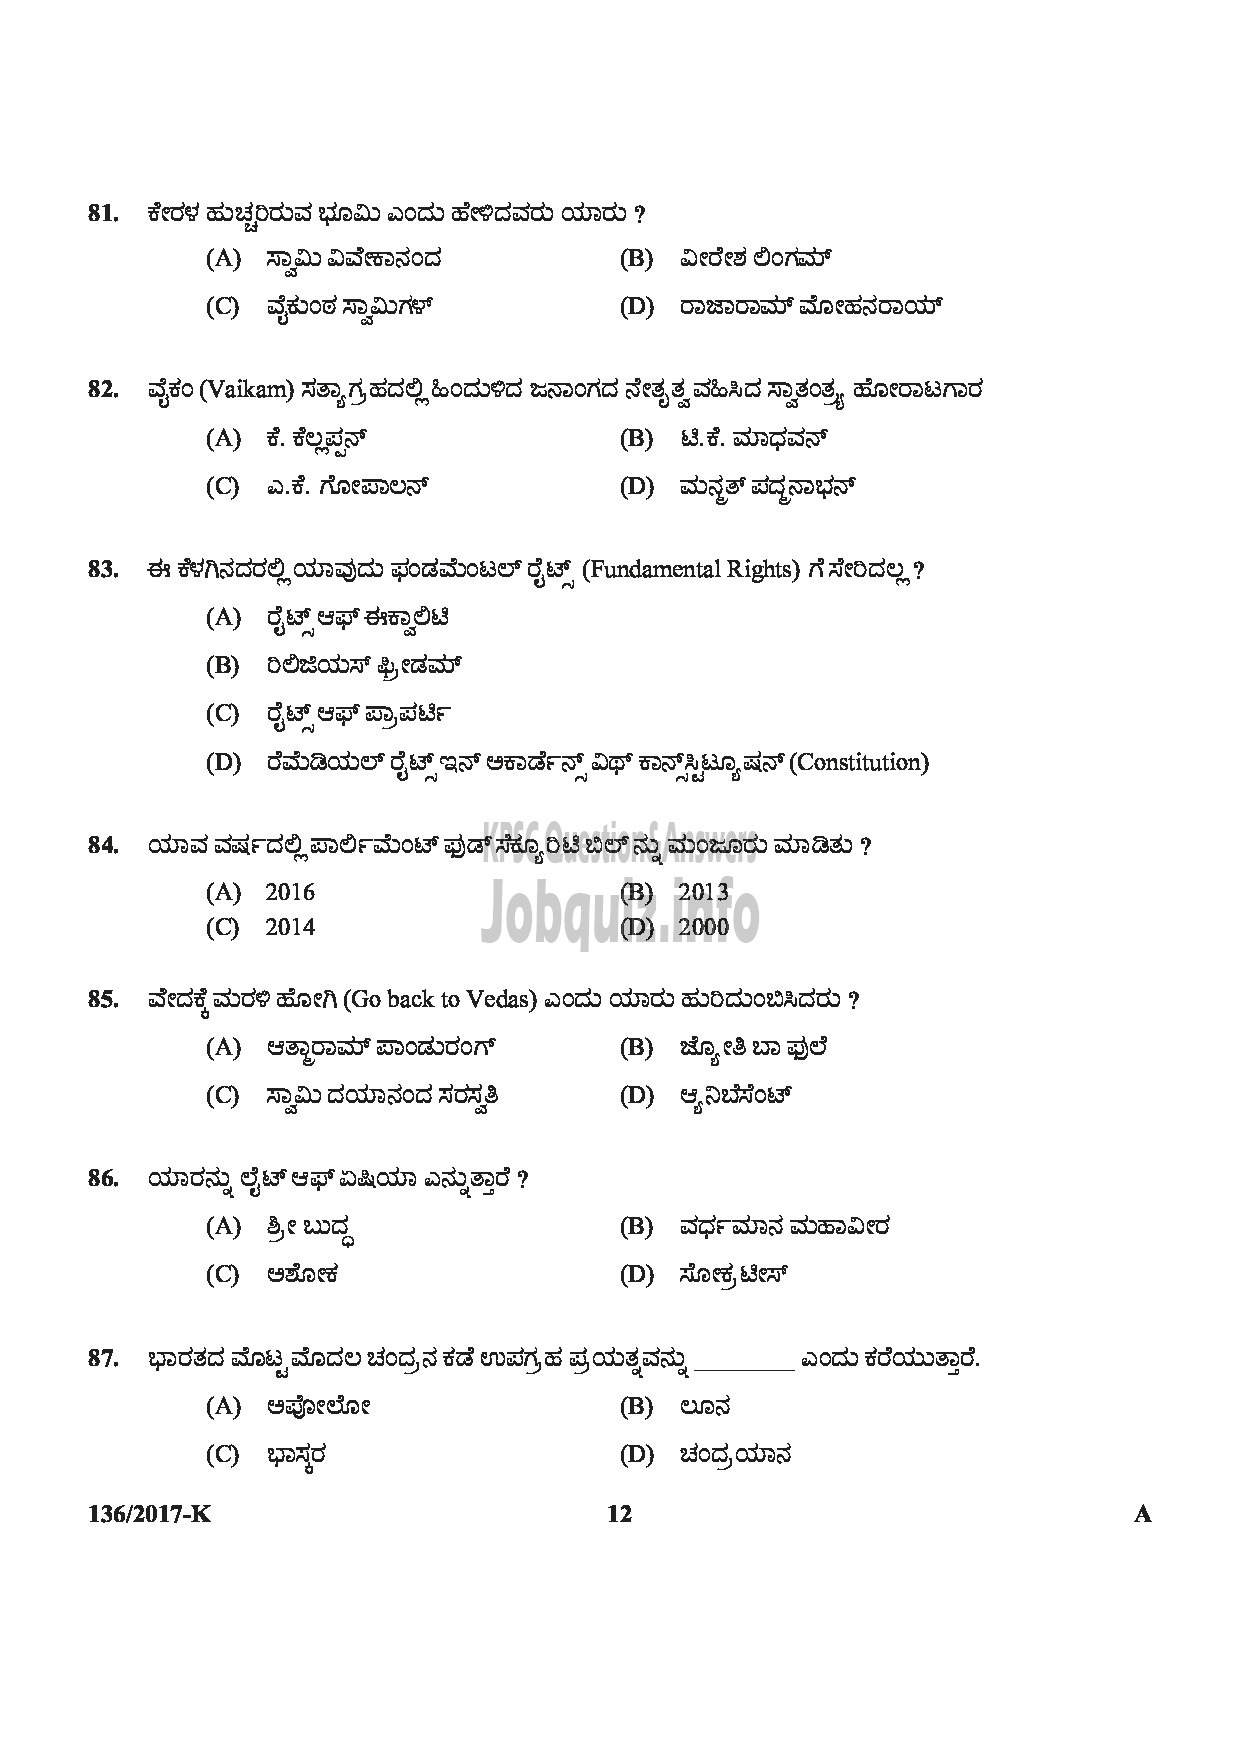 Kerala PSC Question Paper - METER READER/SPOT BILLER SPECIAL RECRUITMENT FROM AMONG ST ONLY MEDIUM OF QUESTION KANNADA-12